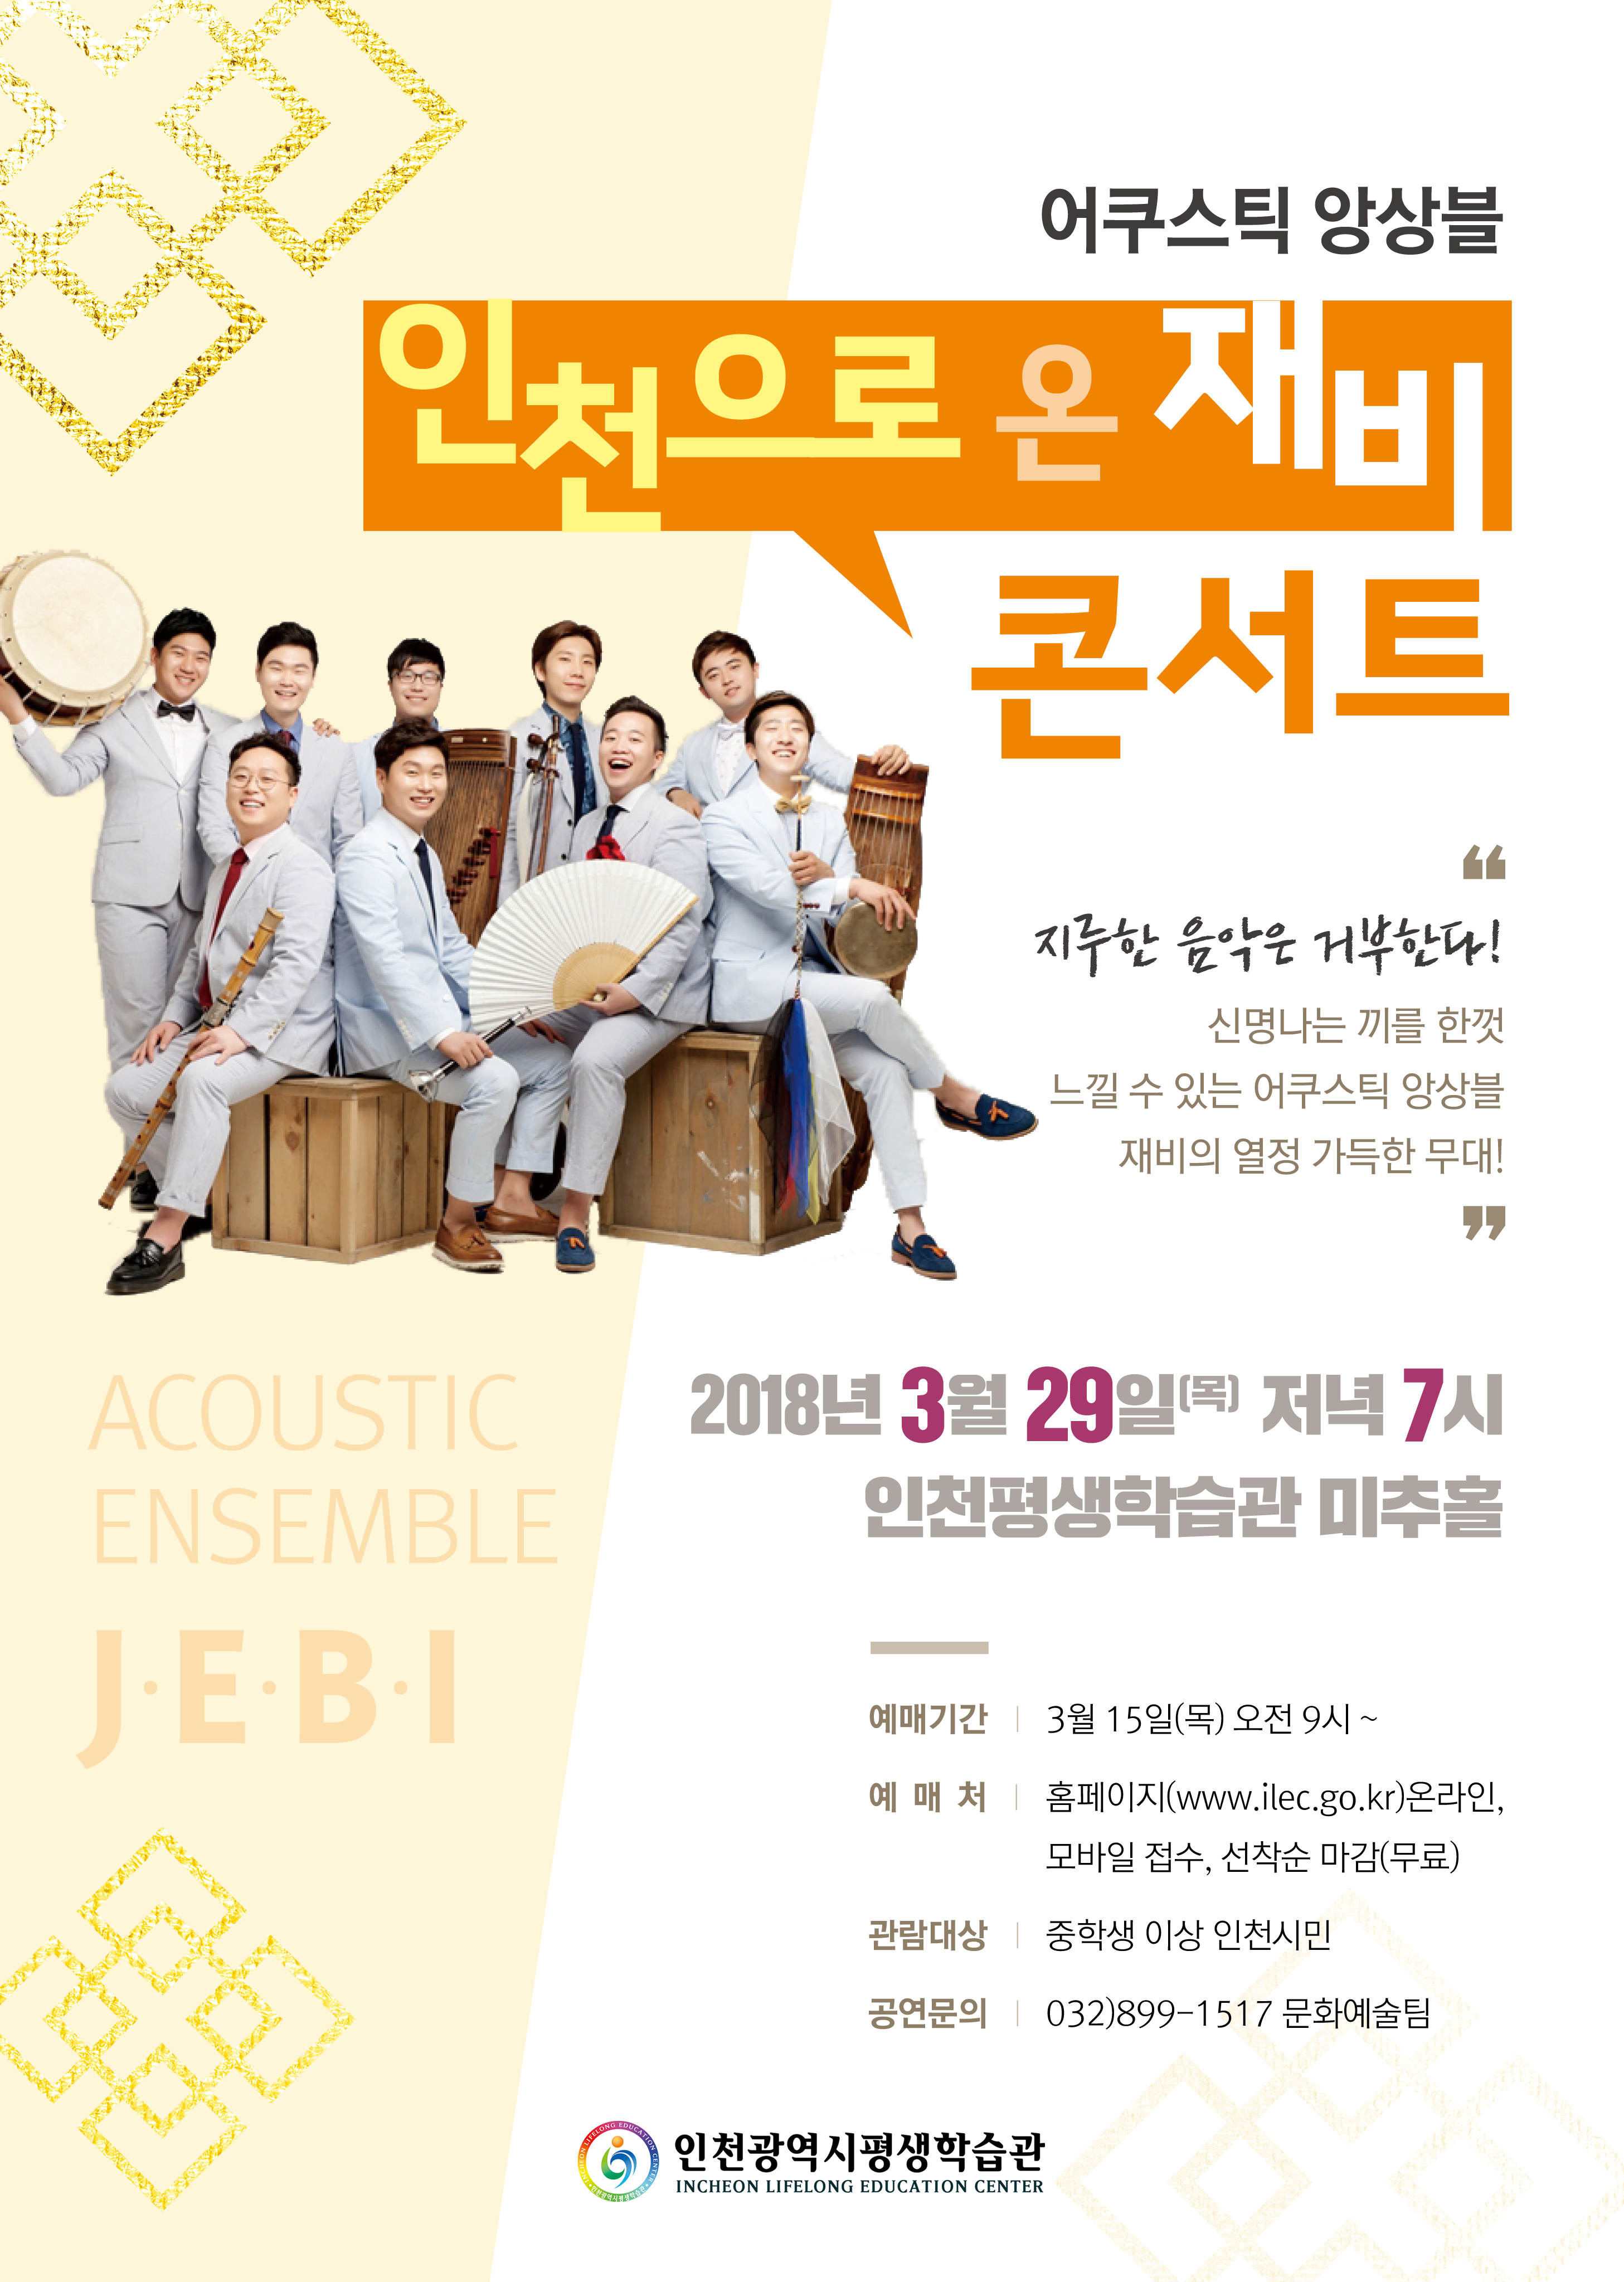 어쿠스틱 앙상블 '인천으로 온 재비'콘서트관련 포스터 - 자세한 내용은 본문참조